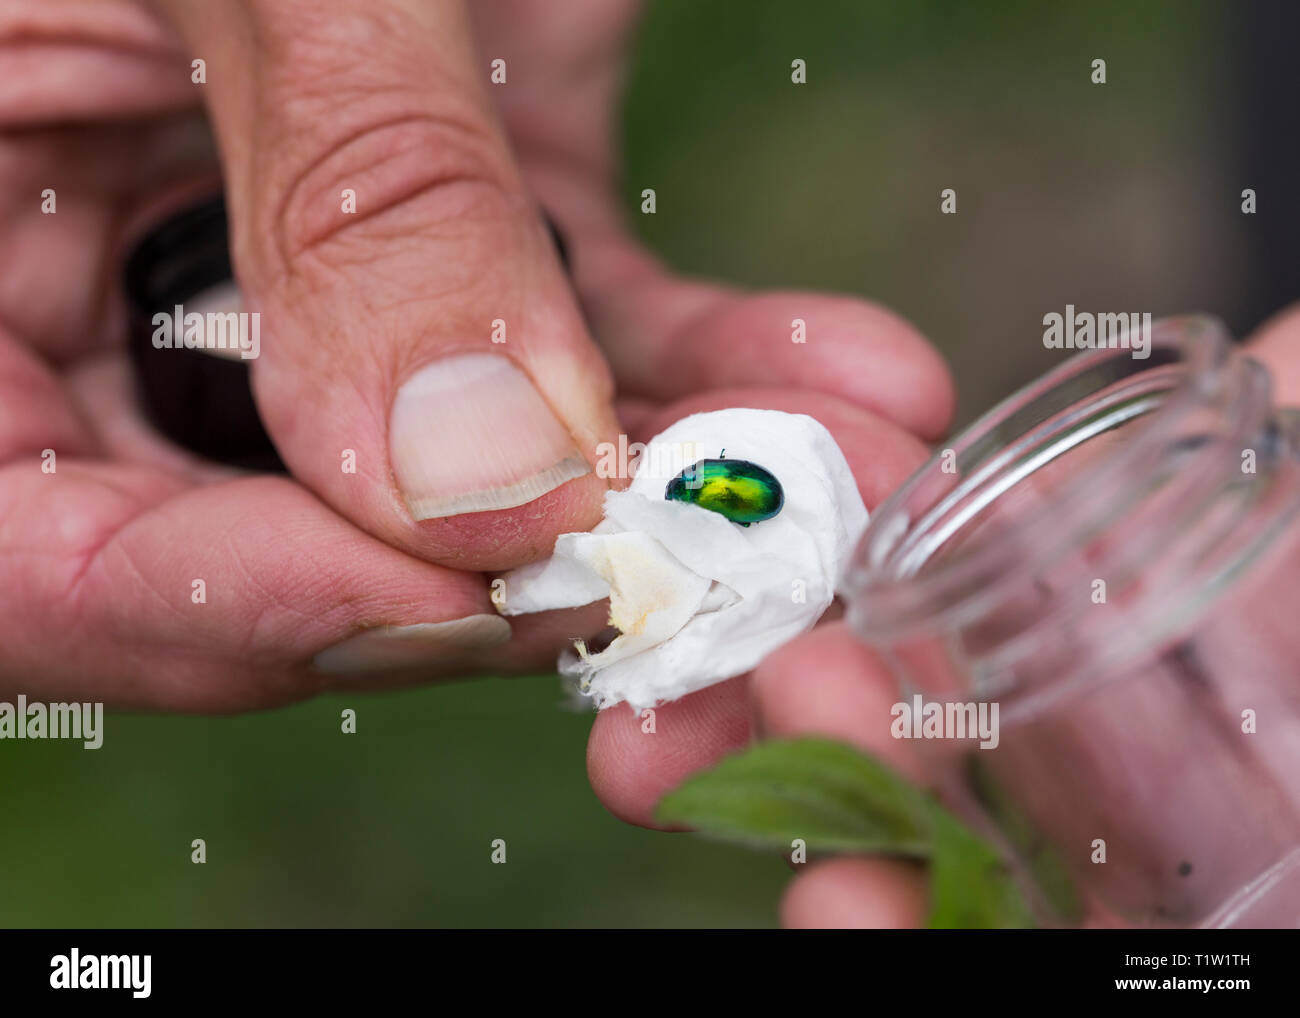 Mint leaf beetle en cours d'examen à des fins de conservation Banque D'Images